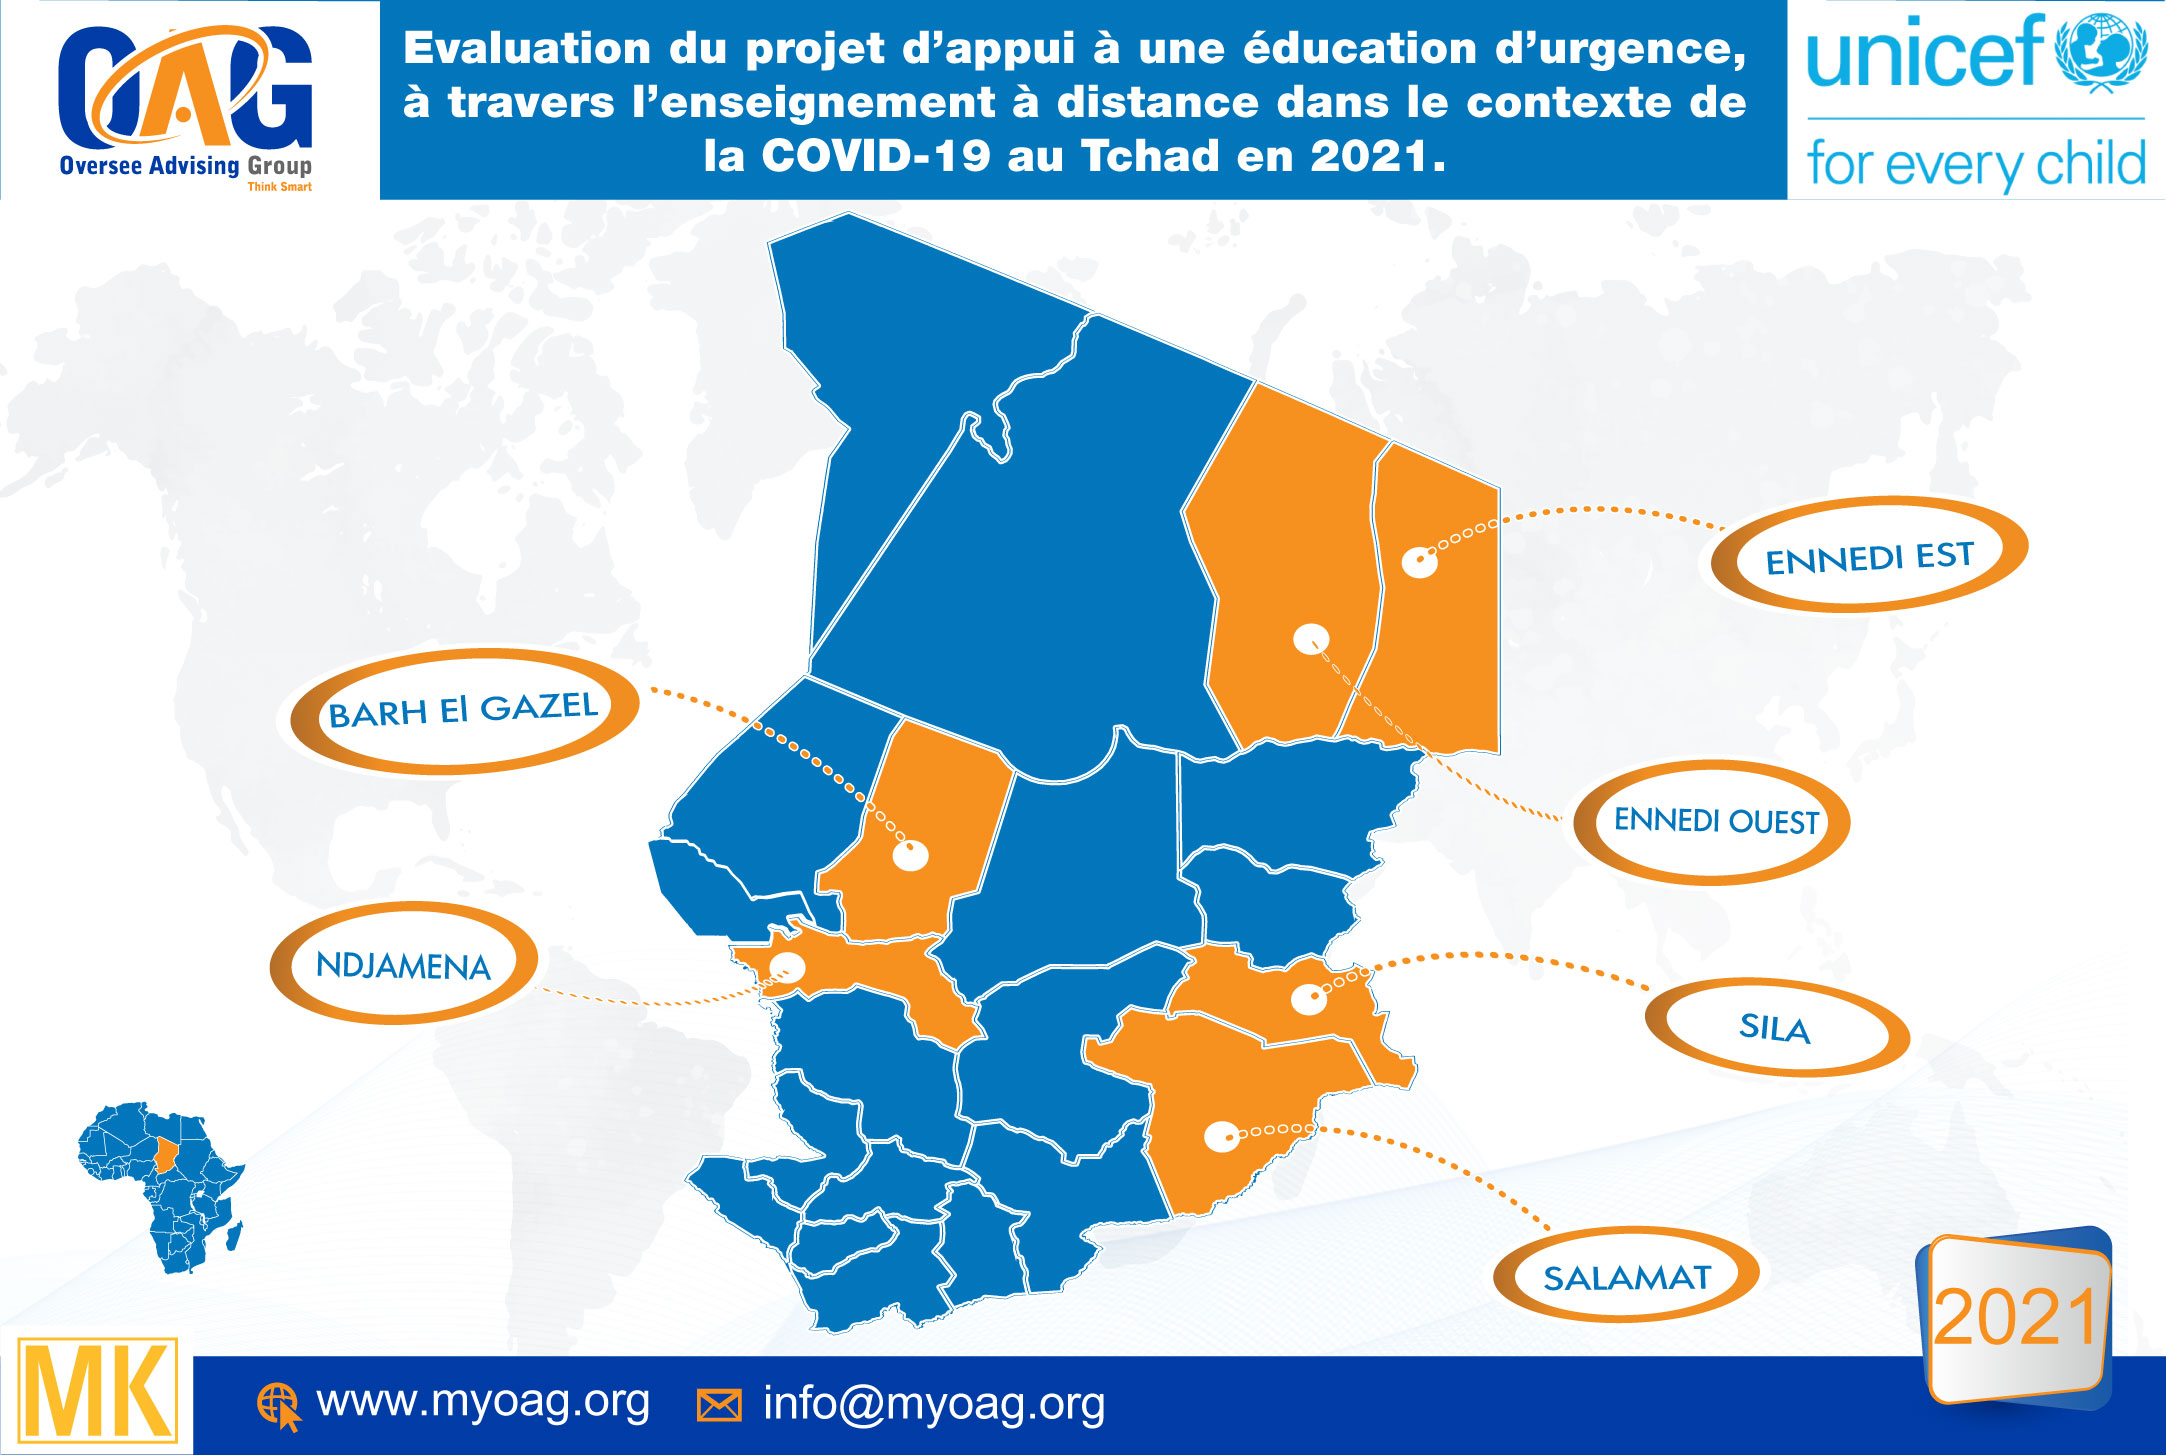 Evaluation du projet d’appui à une éducation d’urgence, à travers l’enseignement à distance dans le contexte de la COVID-19 au Tchad en 2021